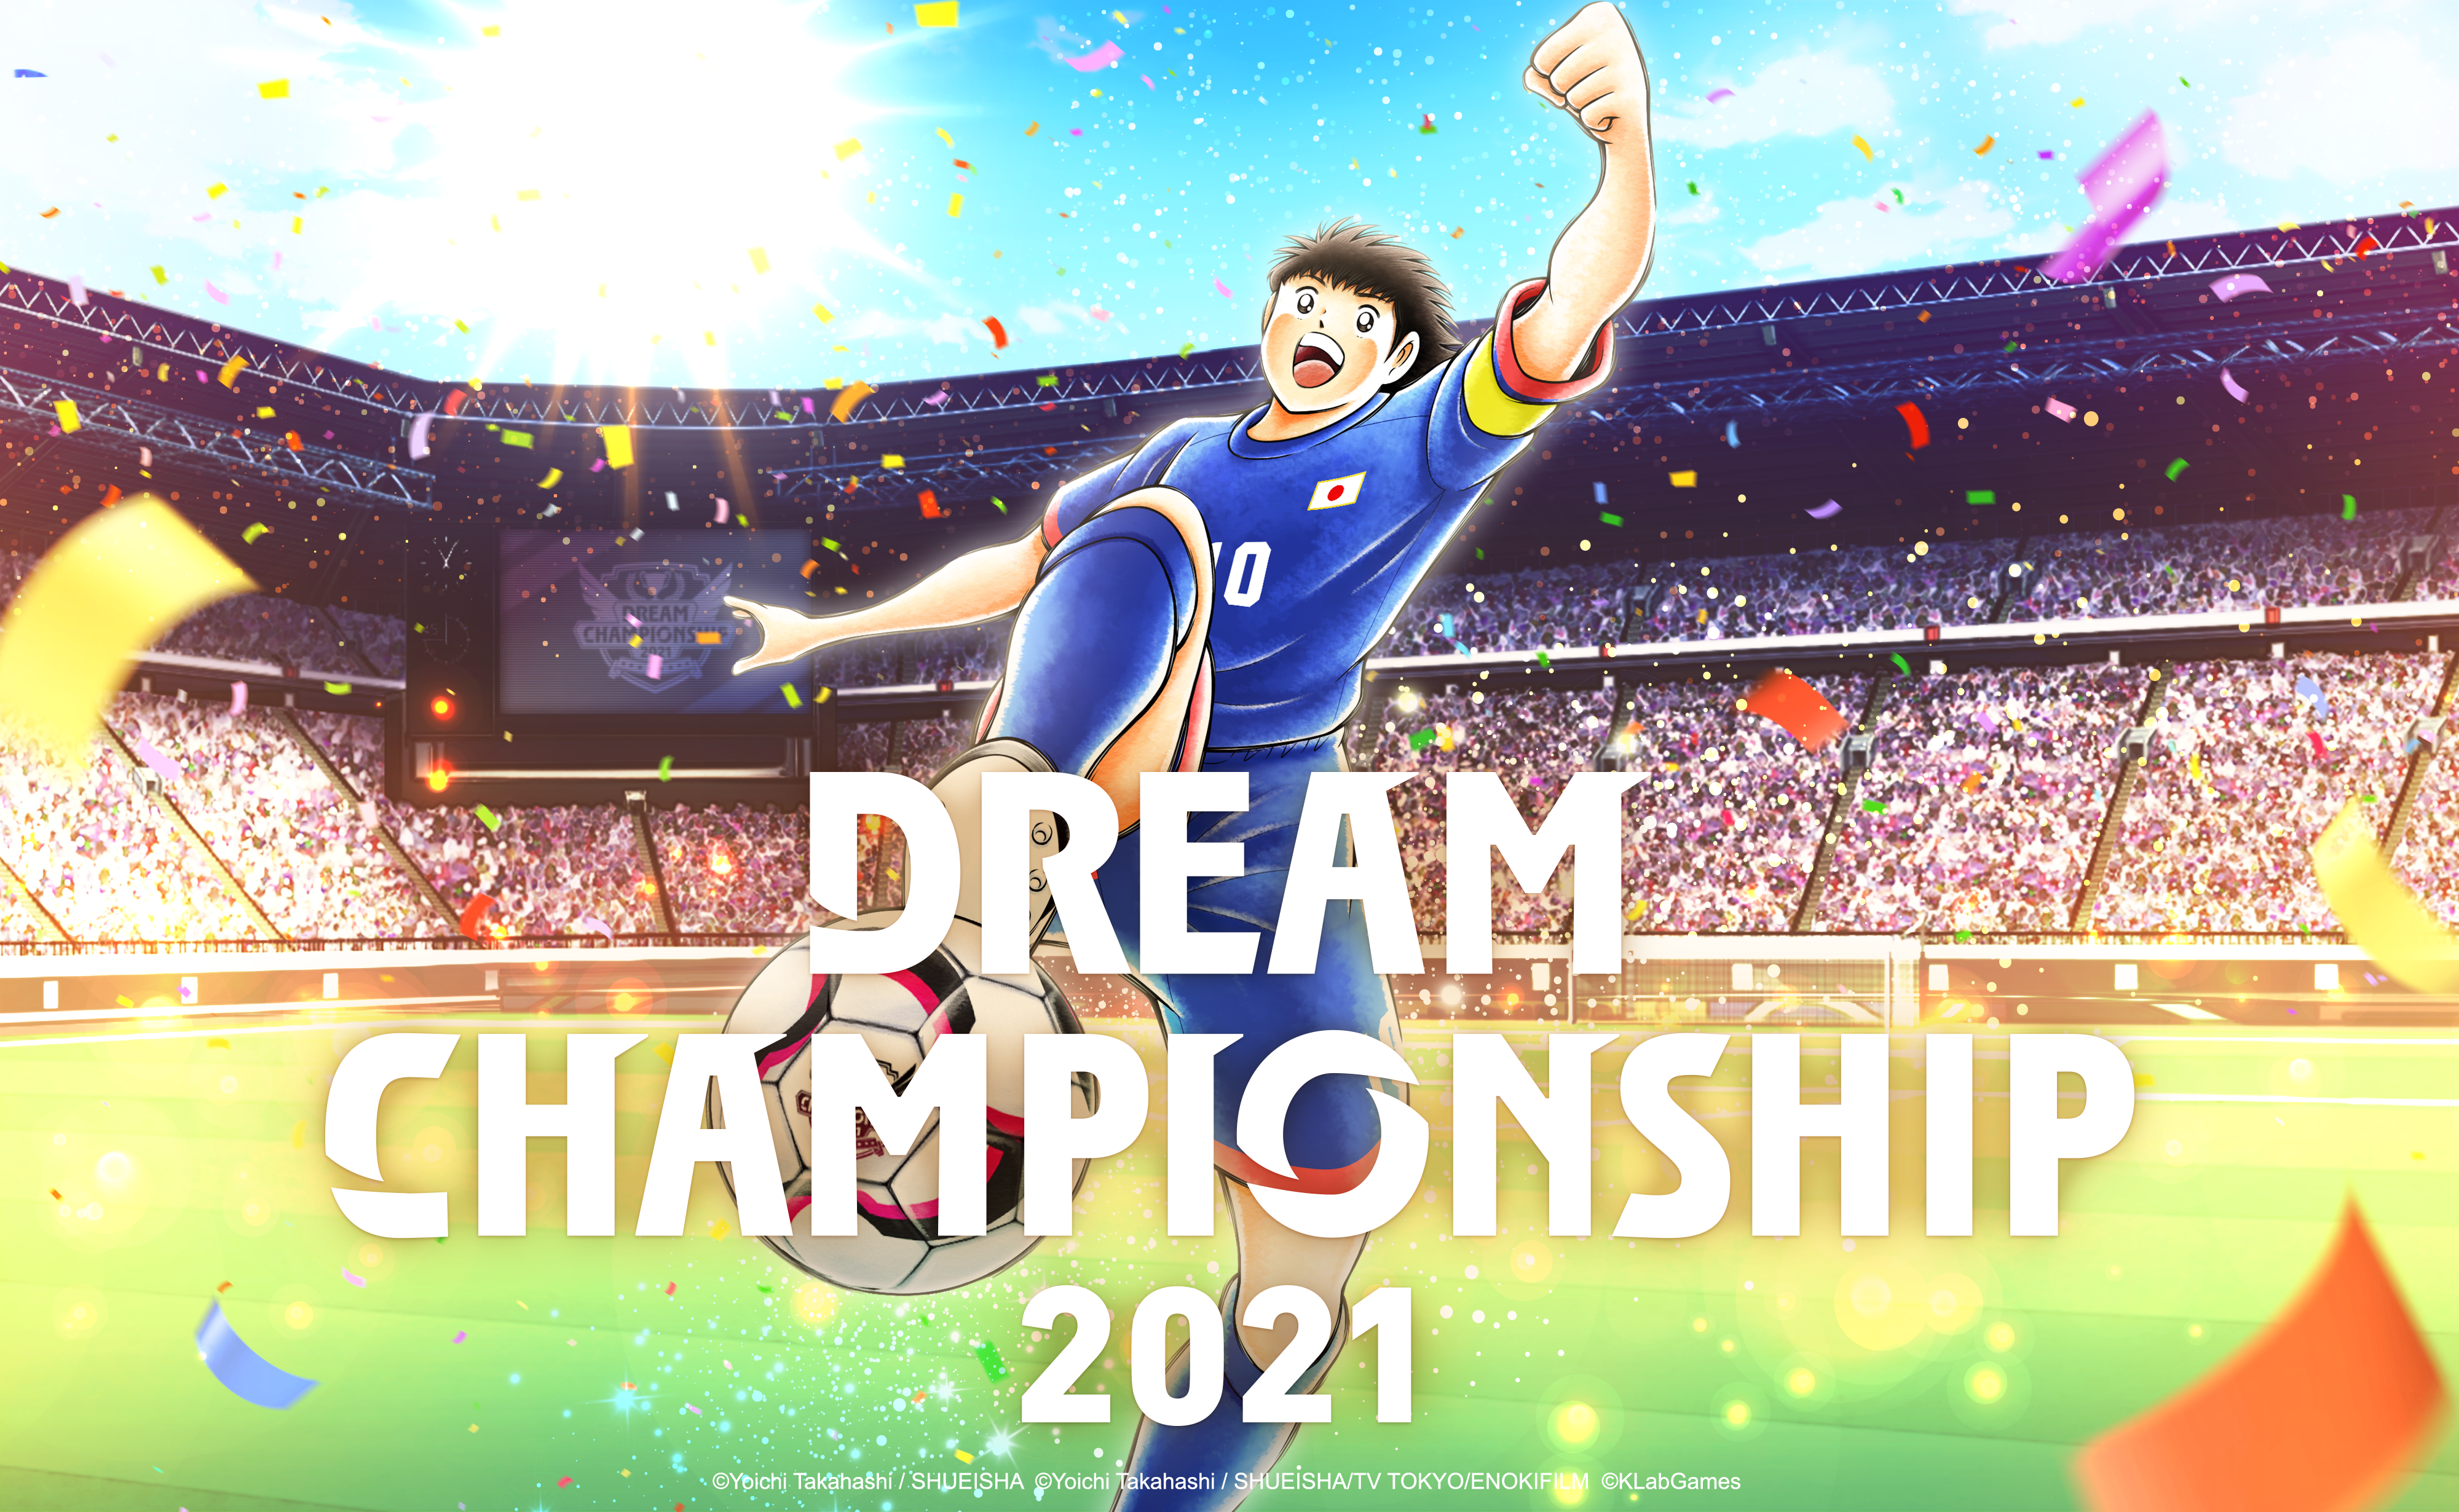 เกม "กัปตันซึบาสะ: ดรีมทีม (Captain Tsubasa: Dream Team)" เปิดรอบคัดเลือกผู้เข้าร่วมแข่งขันออนไลน์ทั่วโลก ดรีมแชมเปียนชิพ 2021 (Dream Championship 2021) ในวันศุกร์ที่ 17 กันยายนนี้!